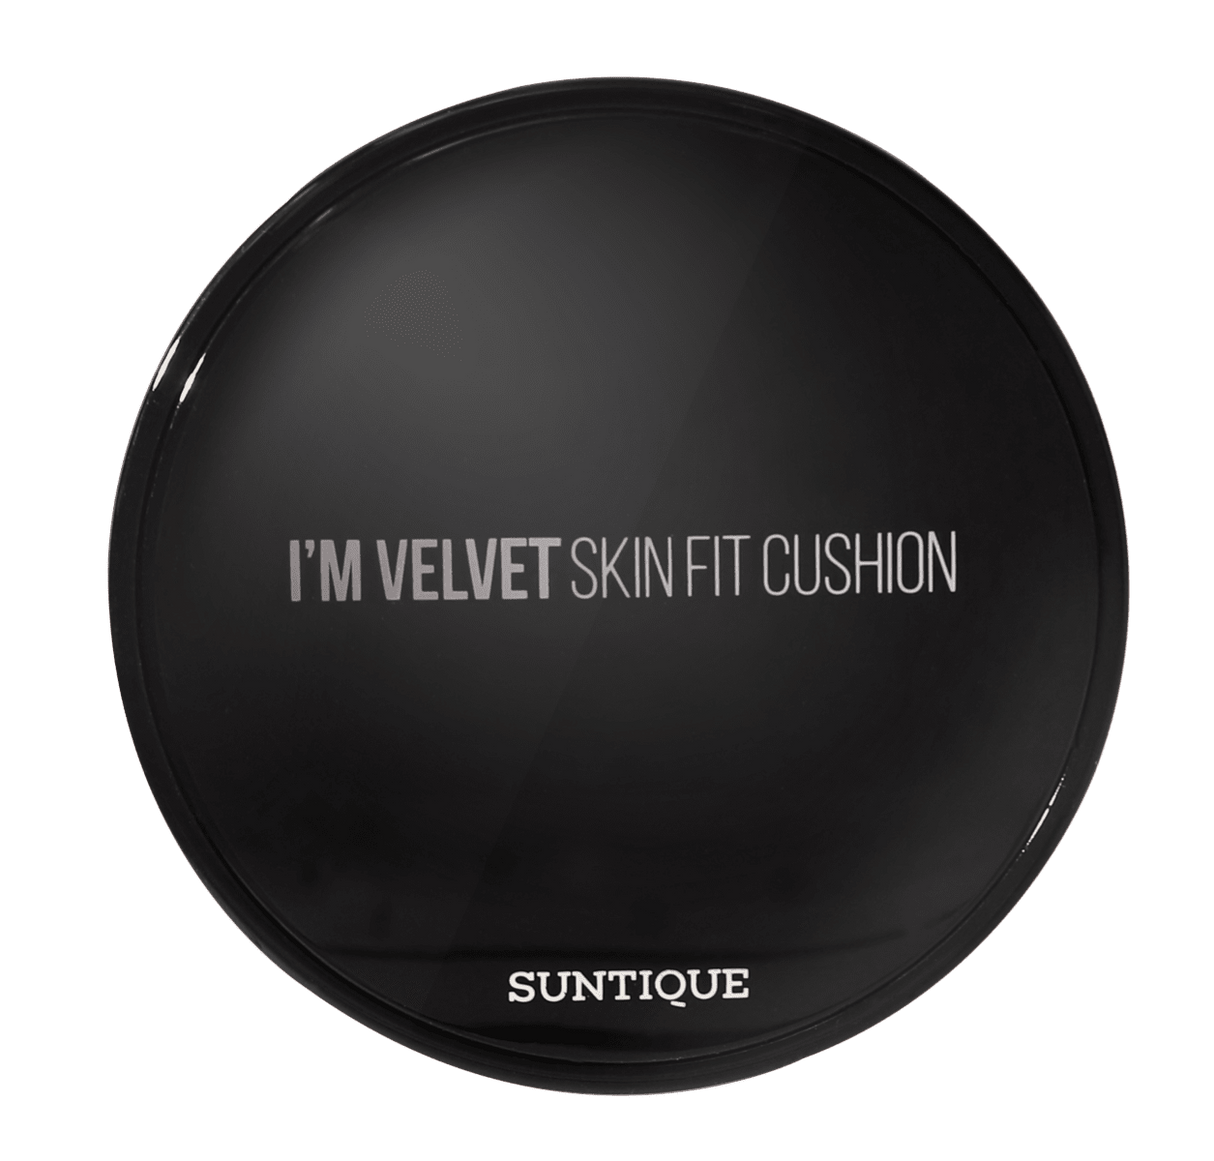 I'm Velvet Skinfit Cushion